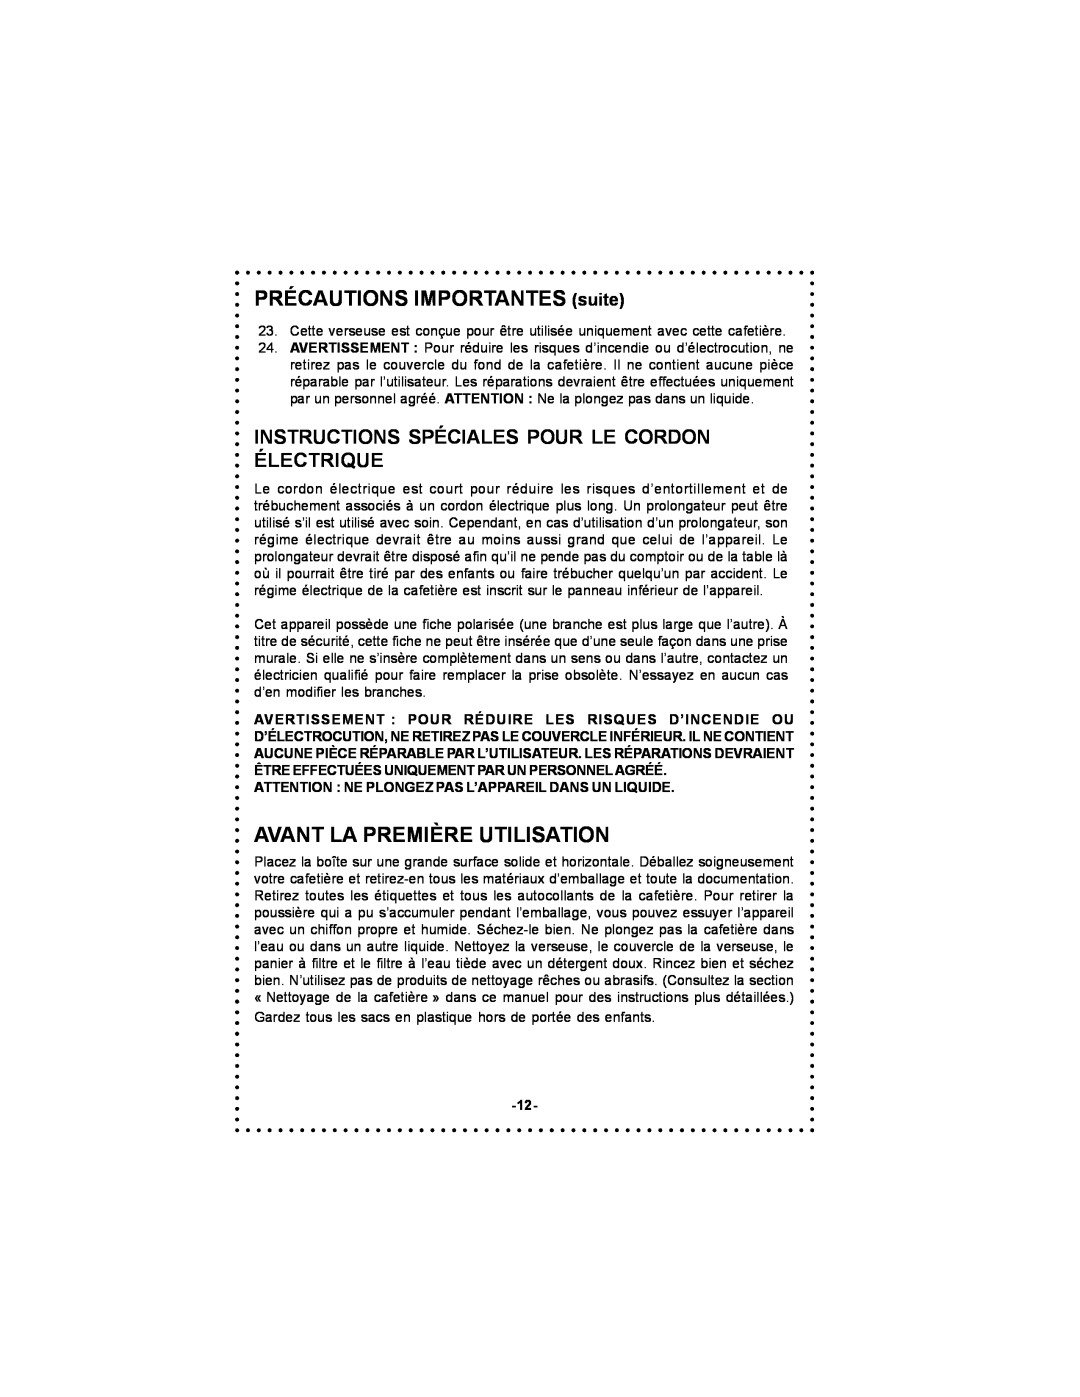 DeLonghi DC50T instruction manual PRÉCAUTIONS IMPORTANTES suite, Avant La Première Utilisation 